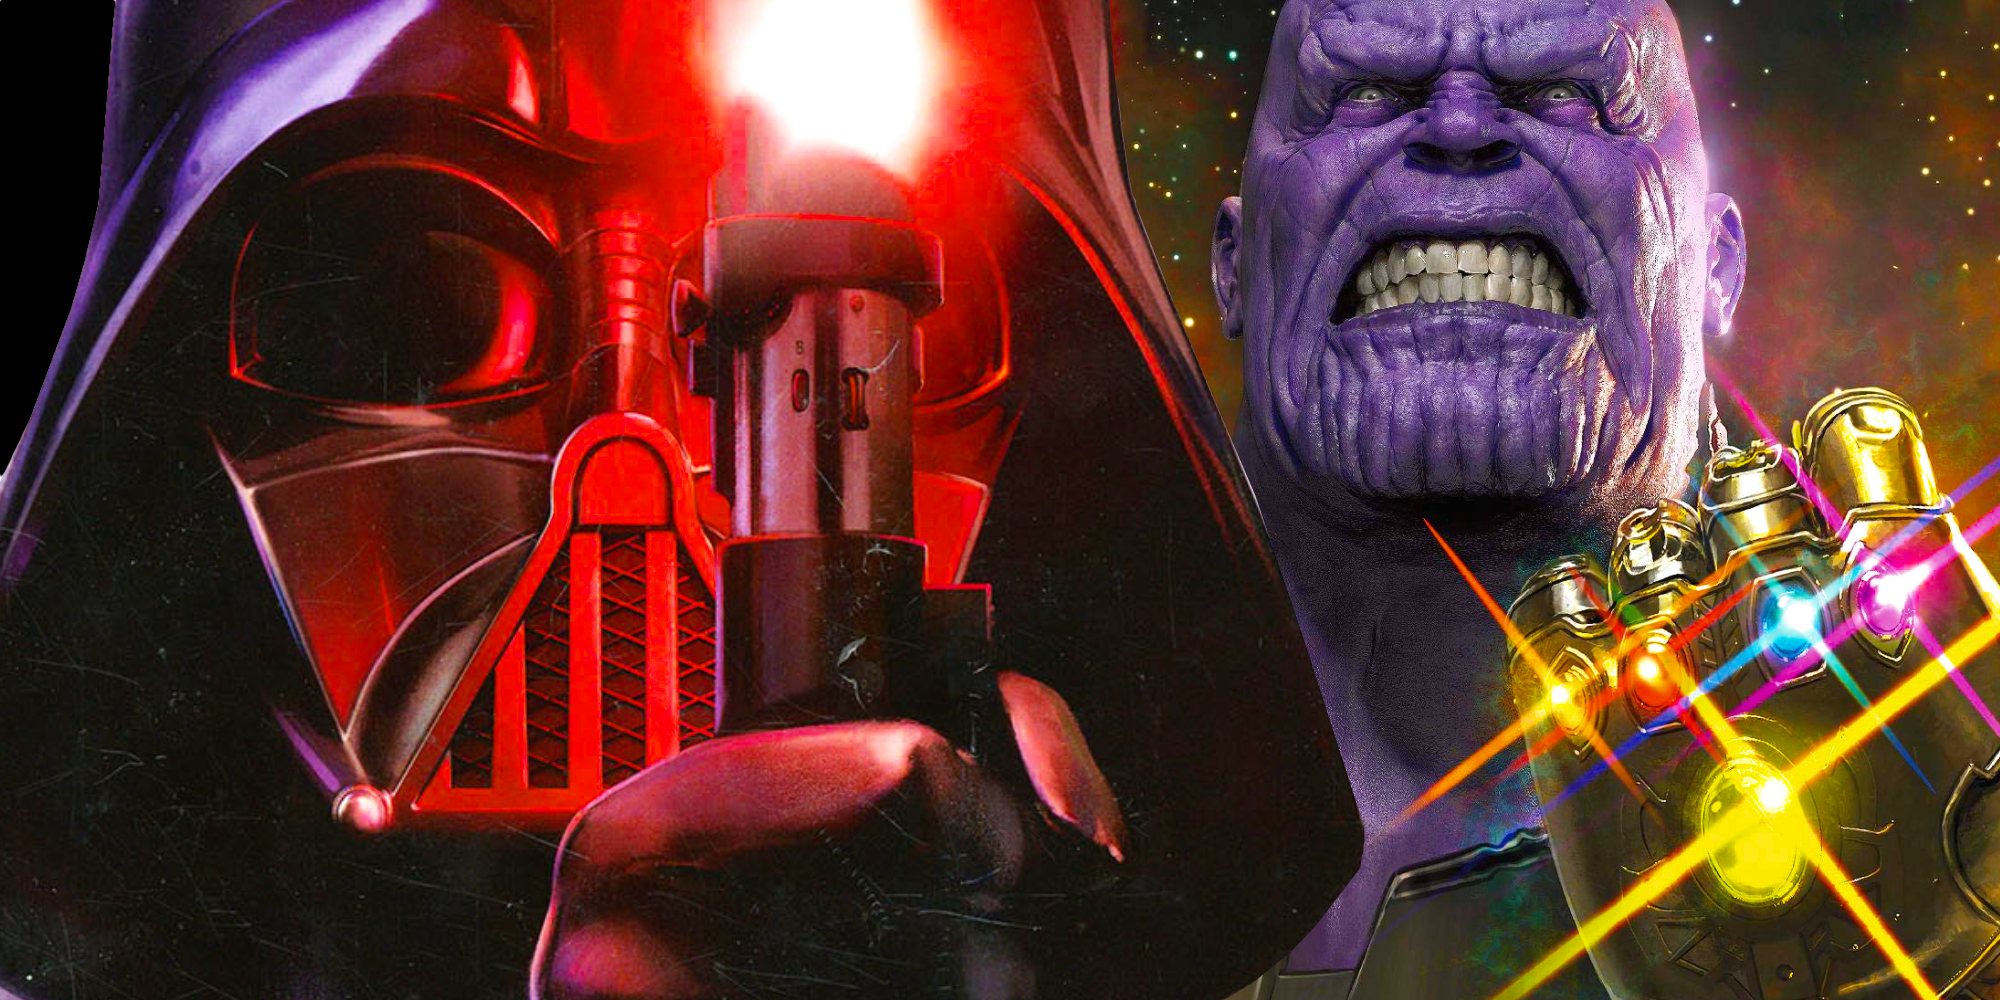 Marvel's Thanos vs Star Wars' Darth Vader 